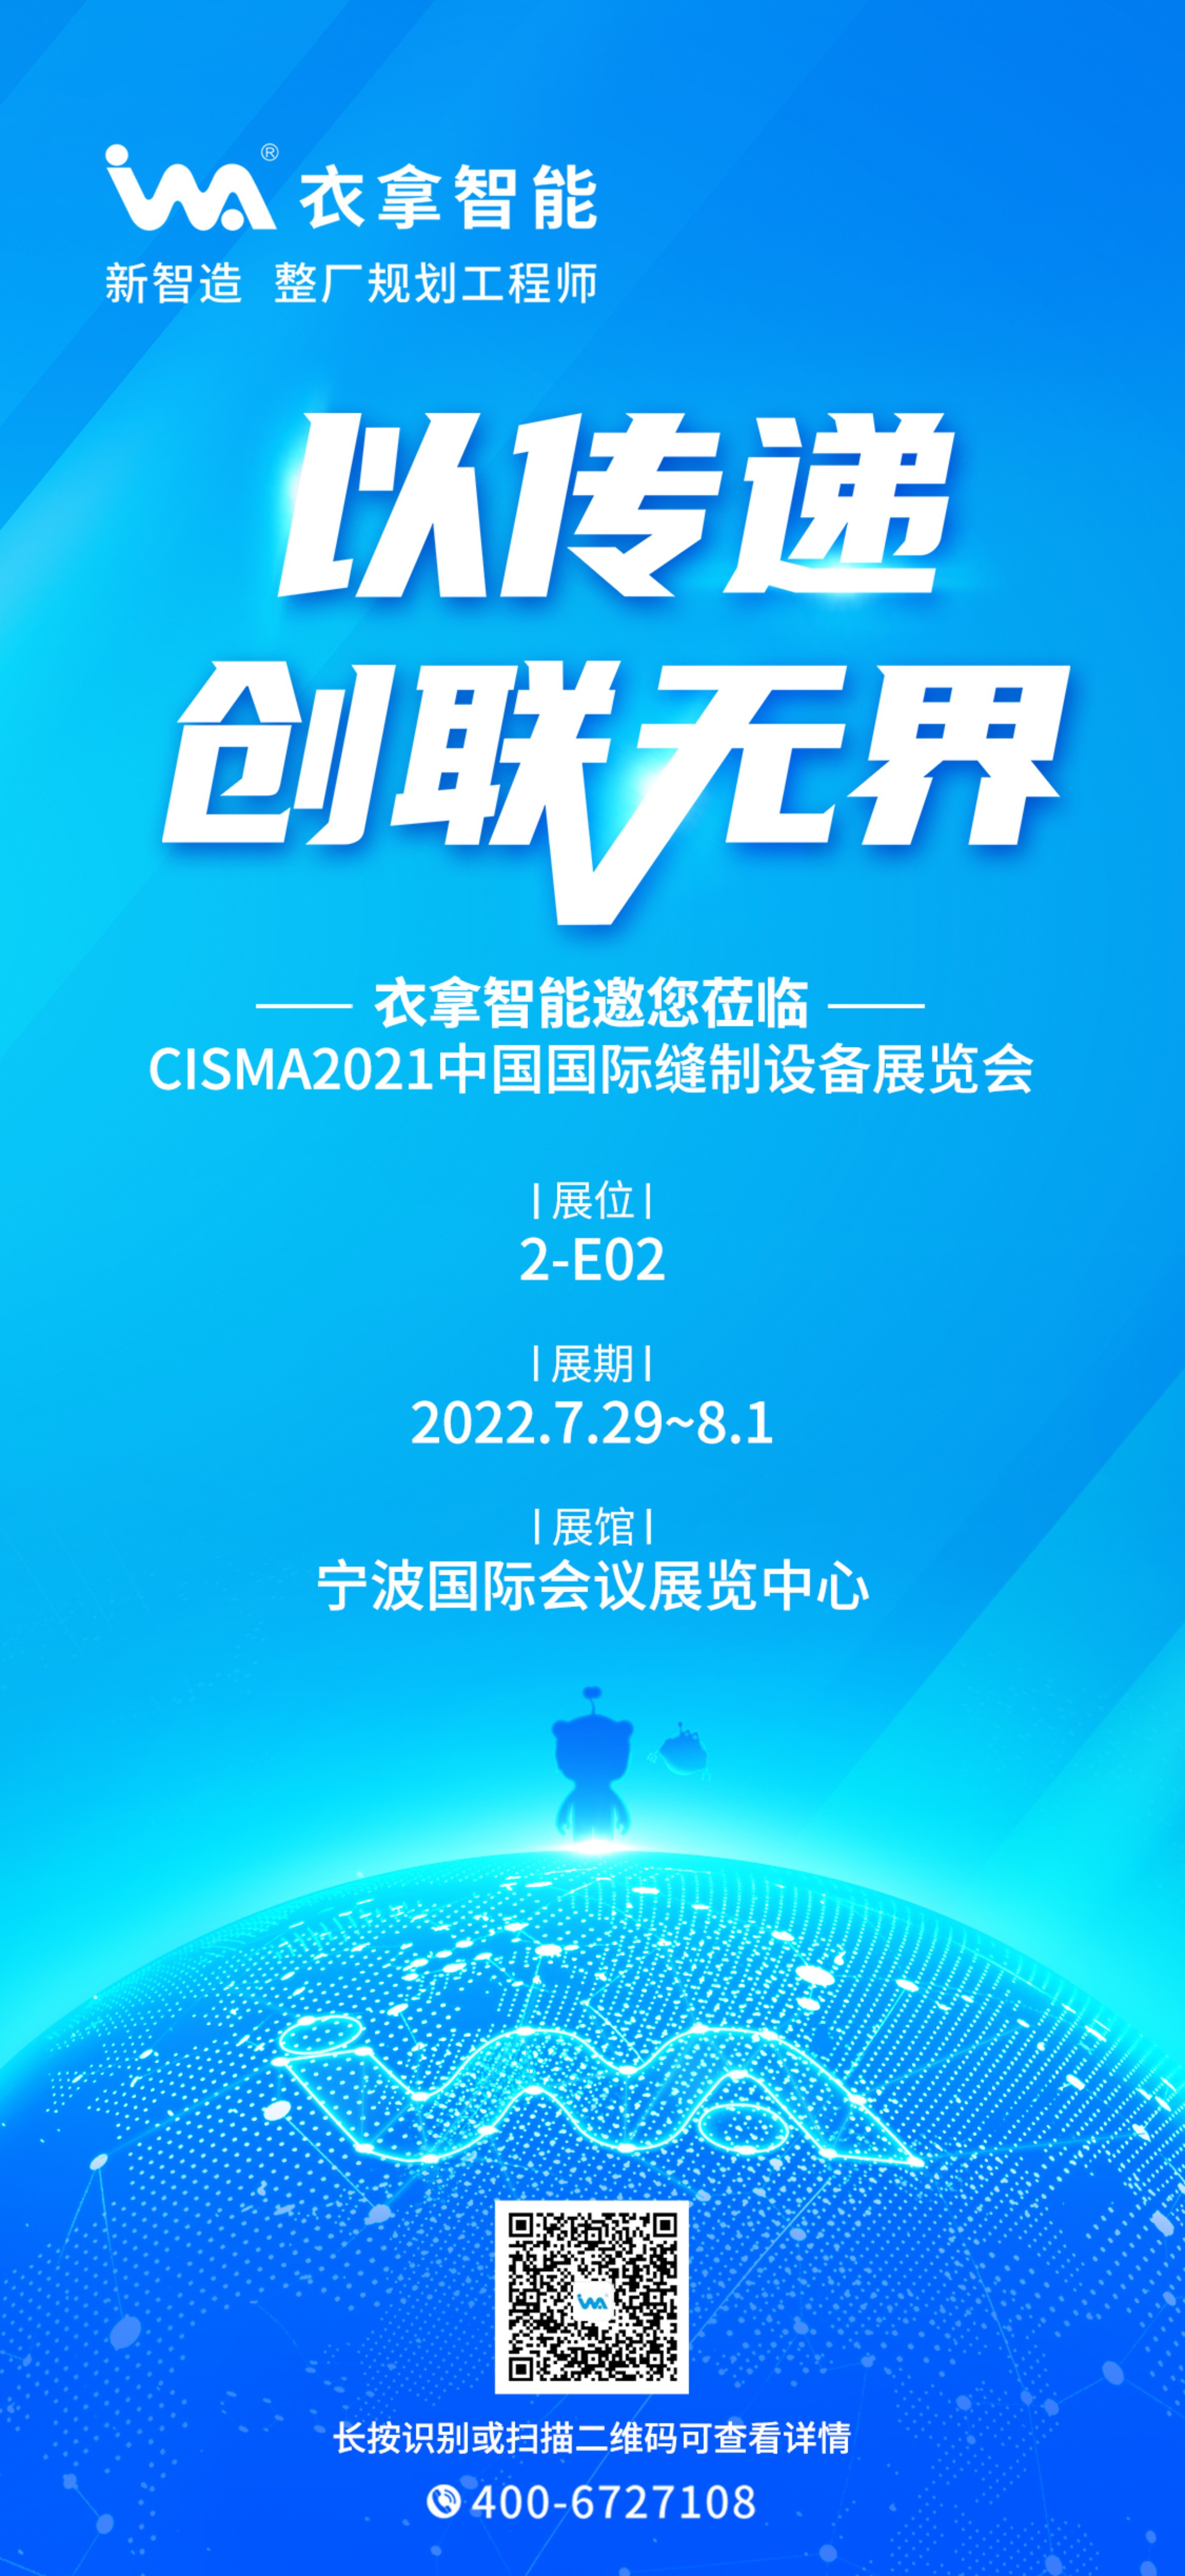 永利永久官网APP智能 | 与您相约CISMA2021中国国际缝制设备展览会